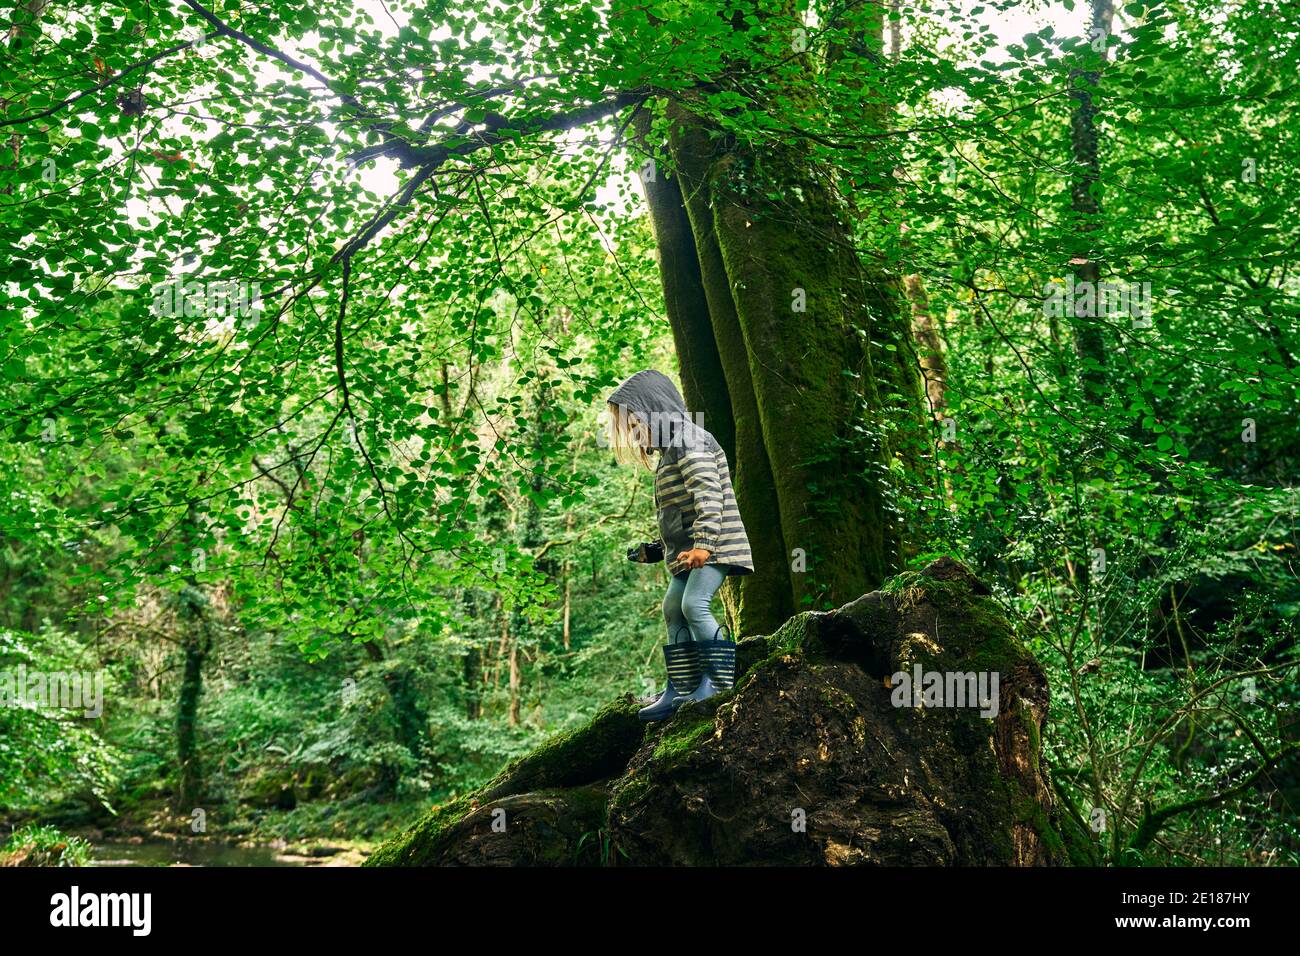 Un petit pré-chooler portant un imperméable explore la forêt en automne Banque D'Images